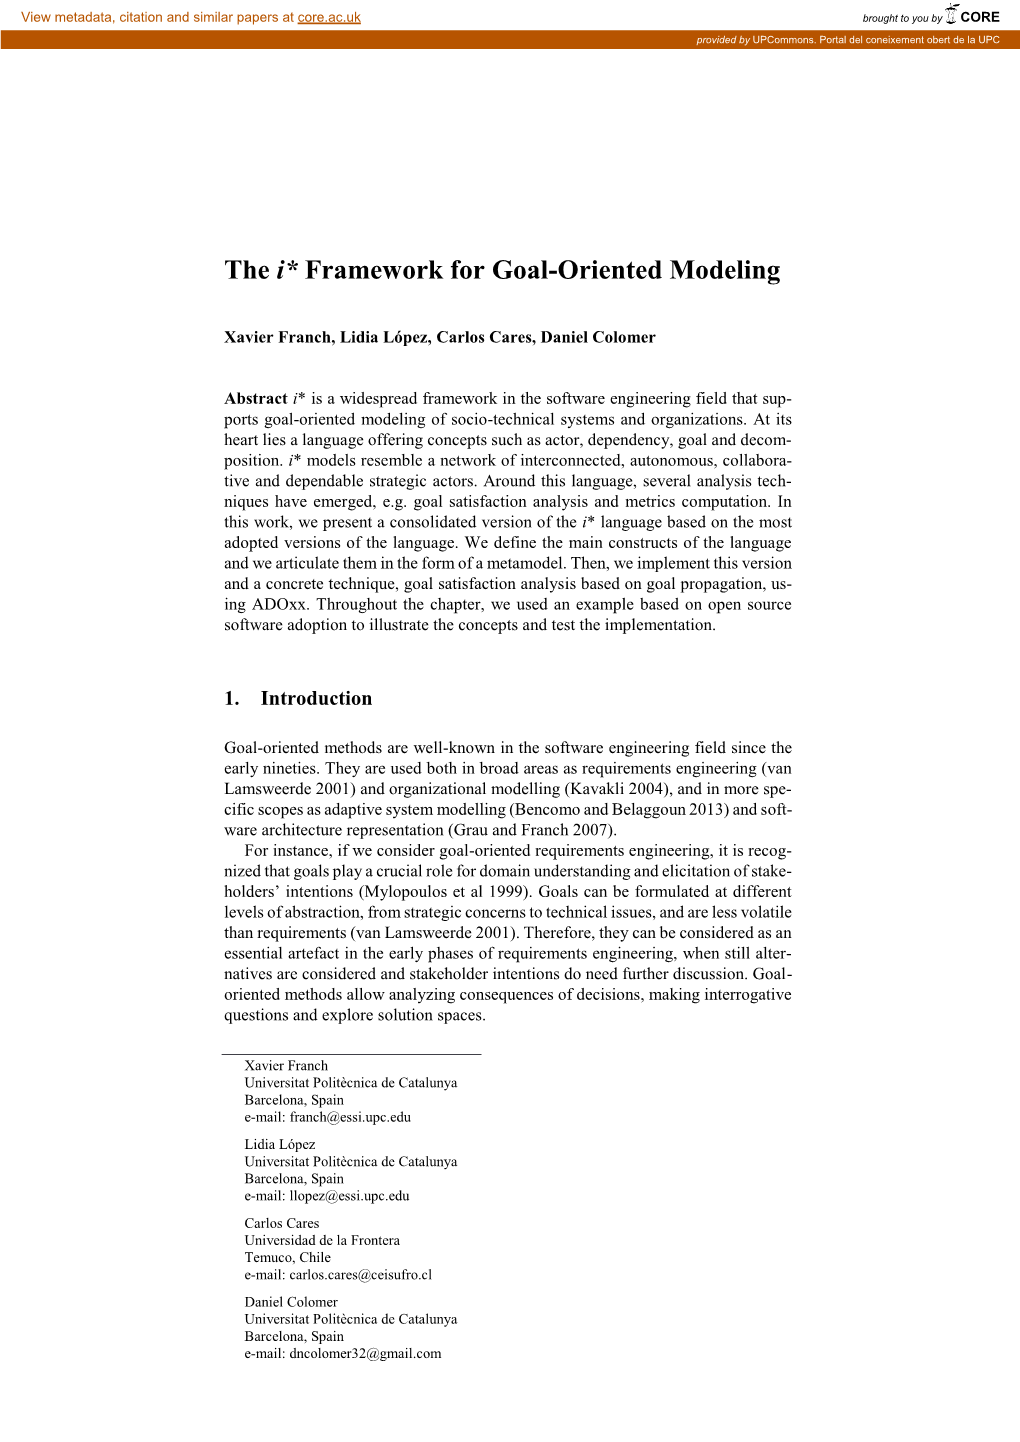 The I* Framework for Goal-Oriented Modeling